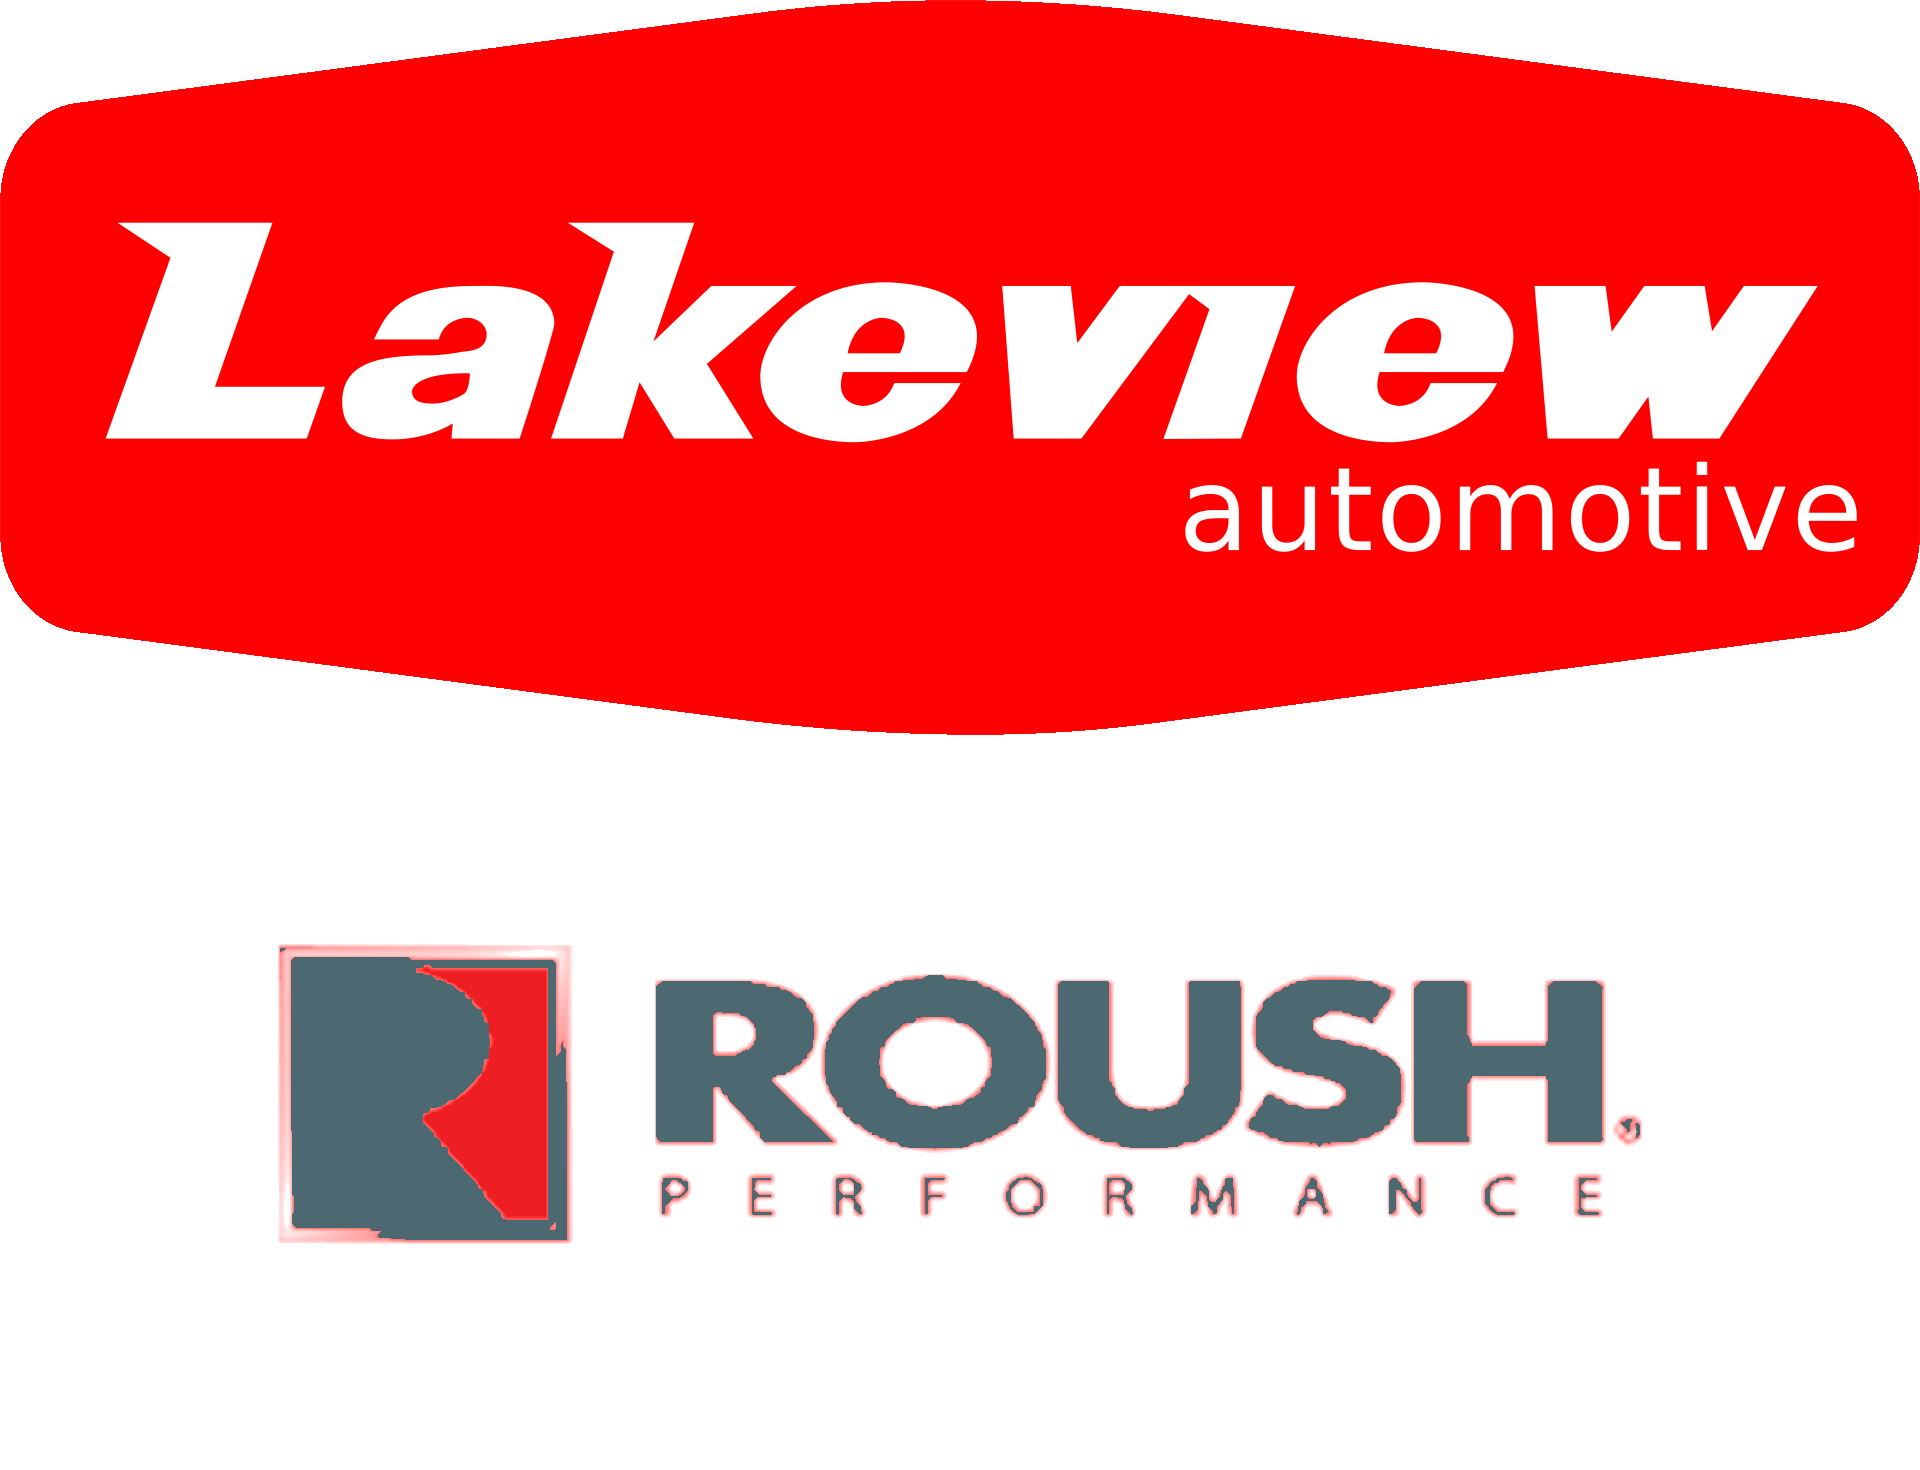 Lake View Automotive